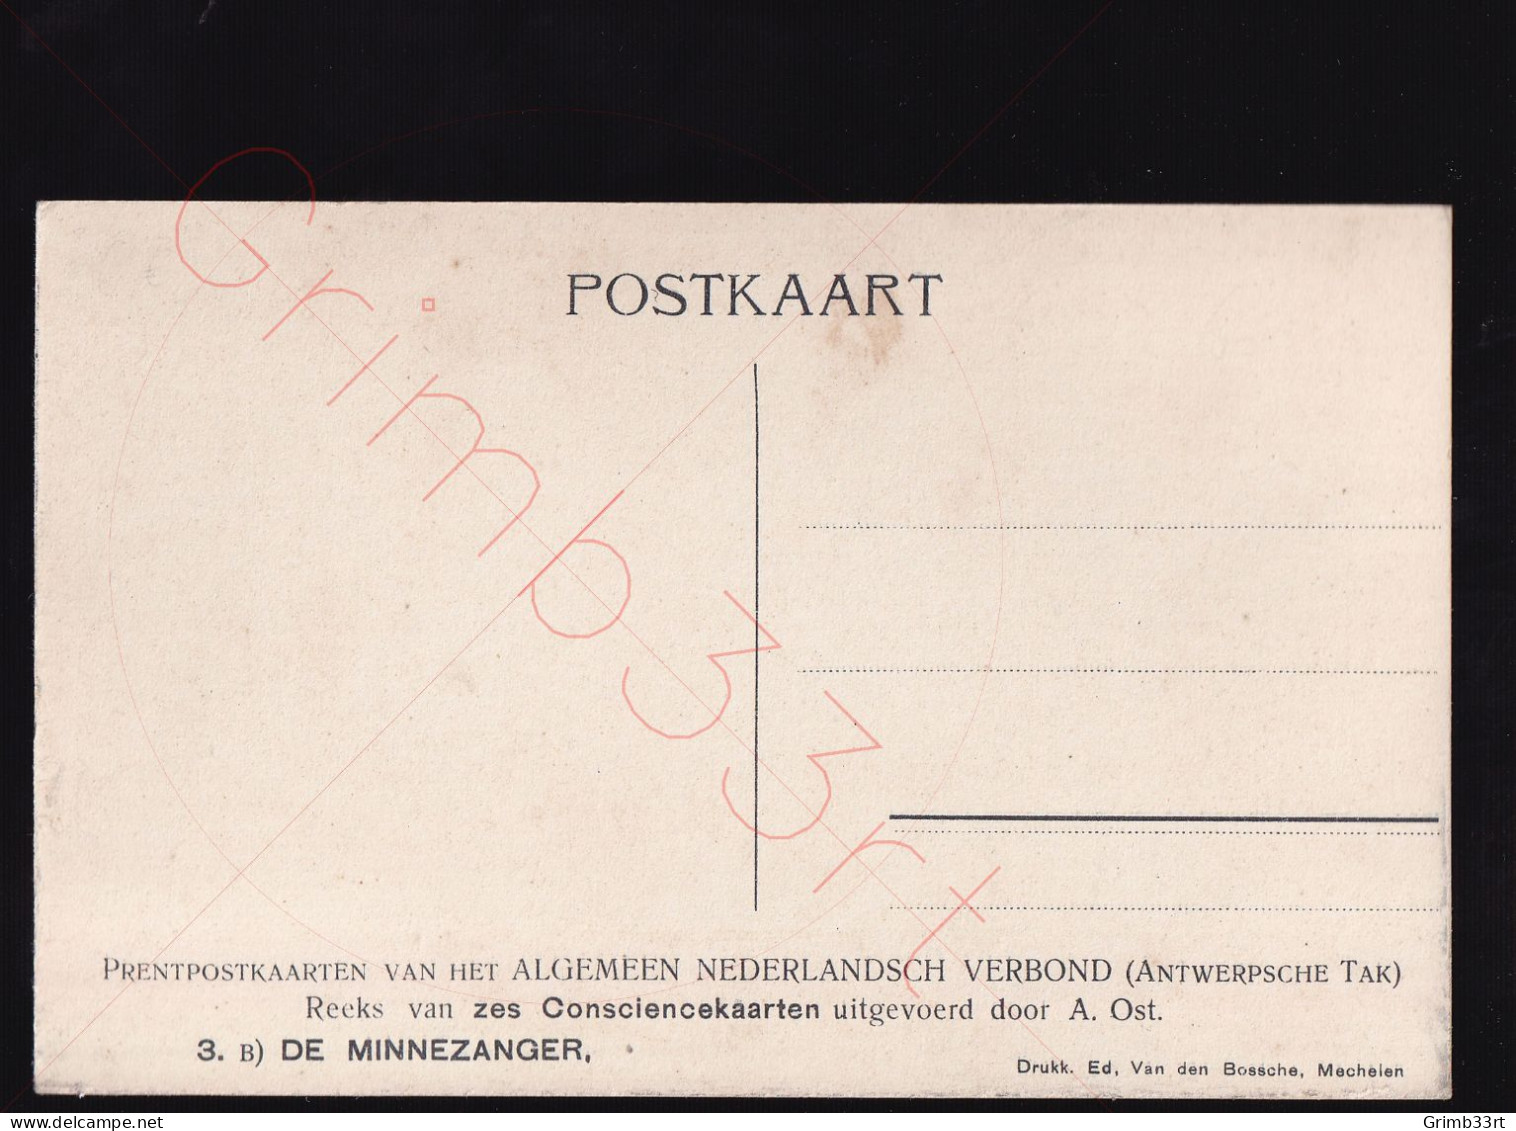 Alfred Ost - De Minnezanger - Consciencekaart - Postkaart - Ost, Alfred